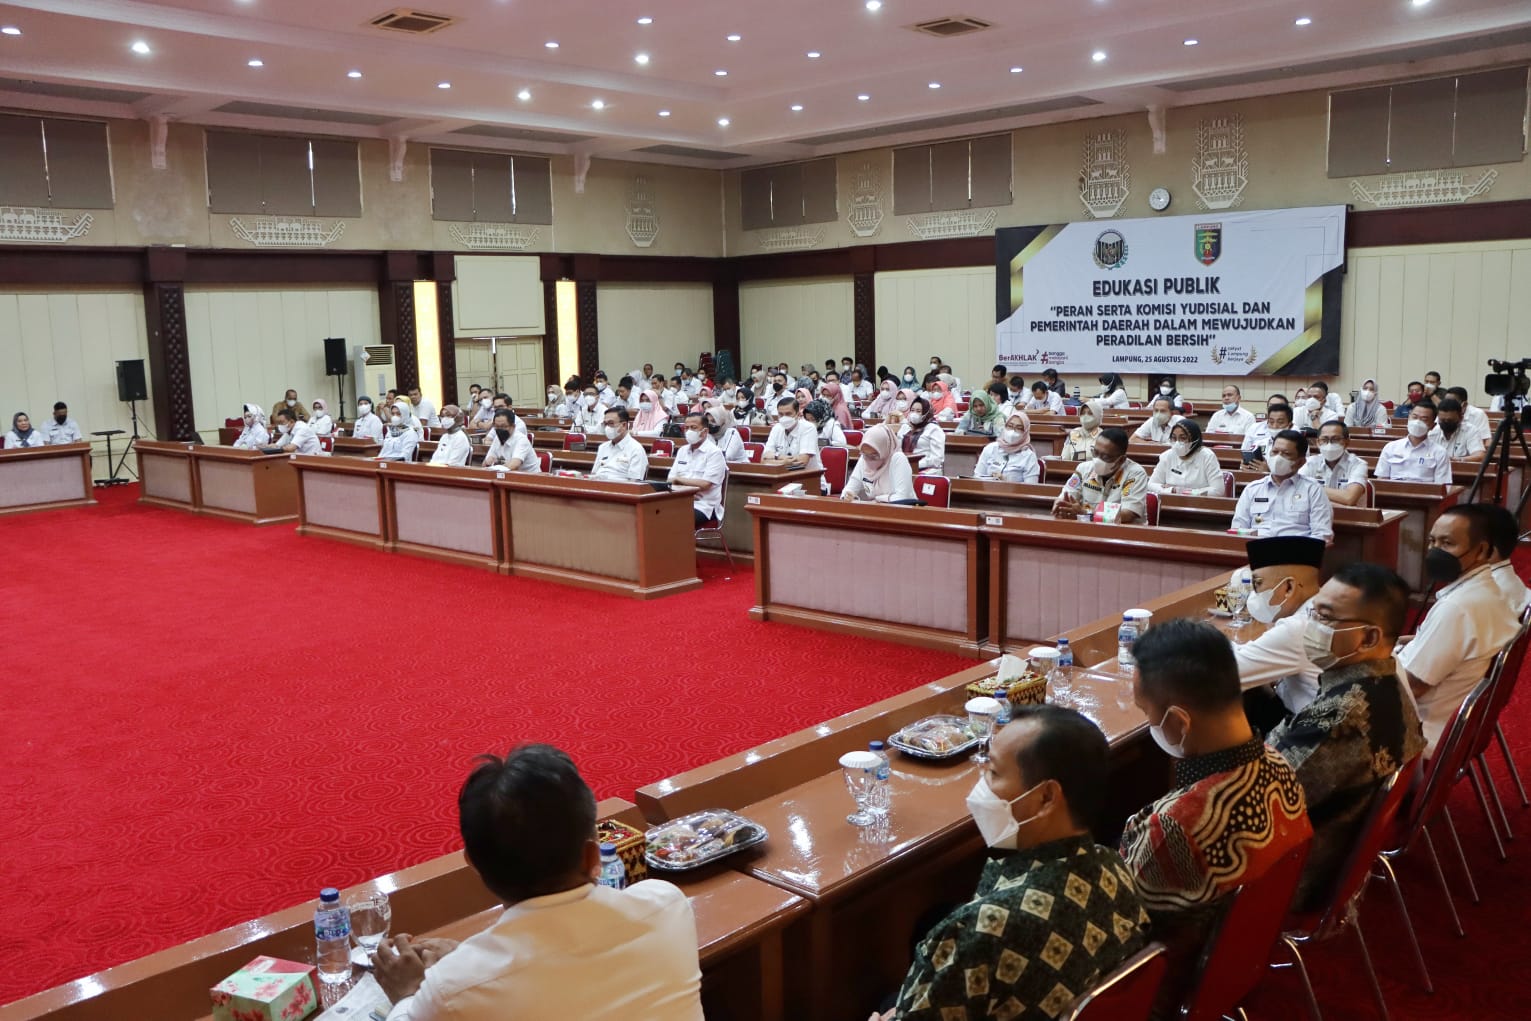 KY Gelar Edukasi Publik di Pemprov Lampung